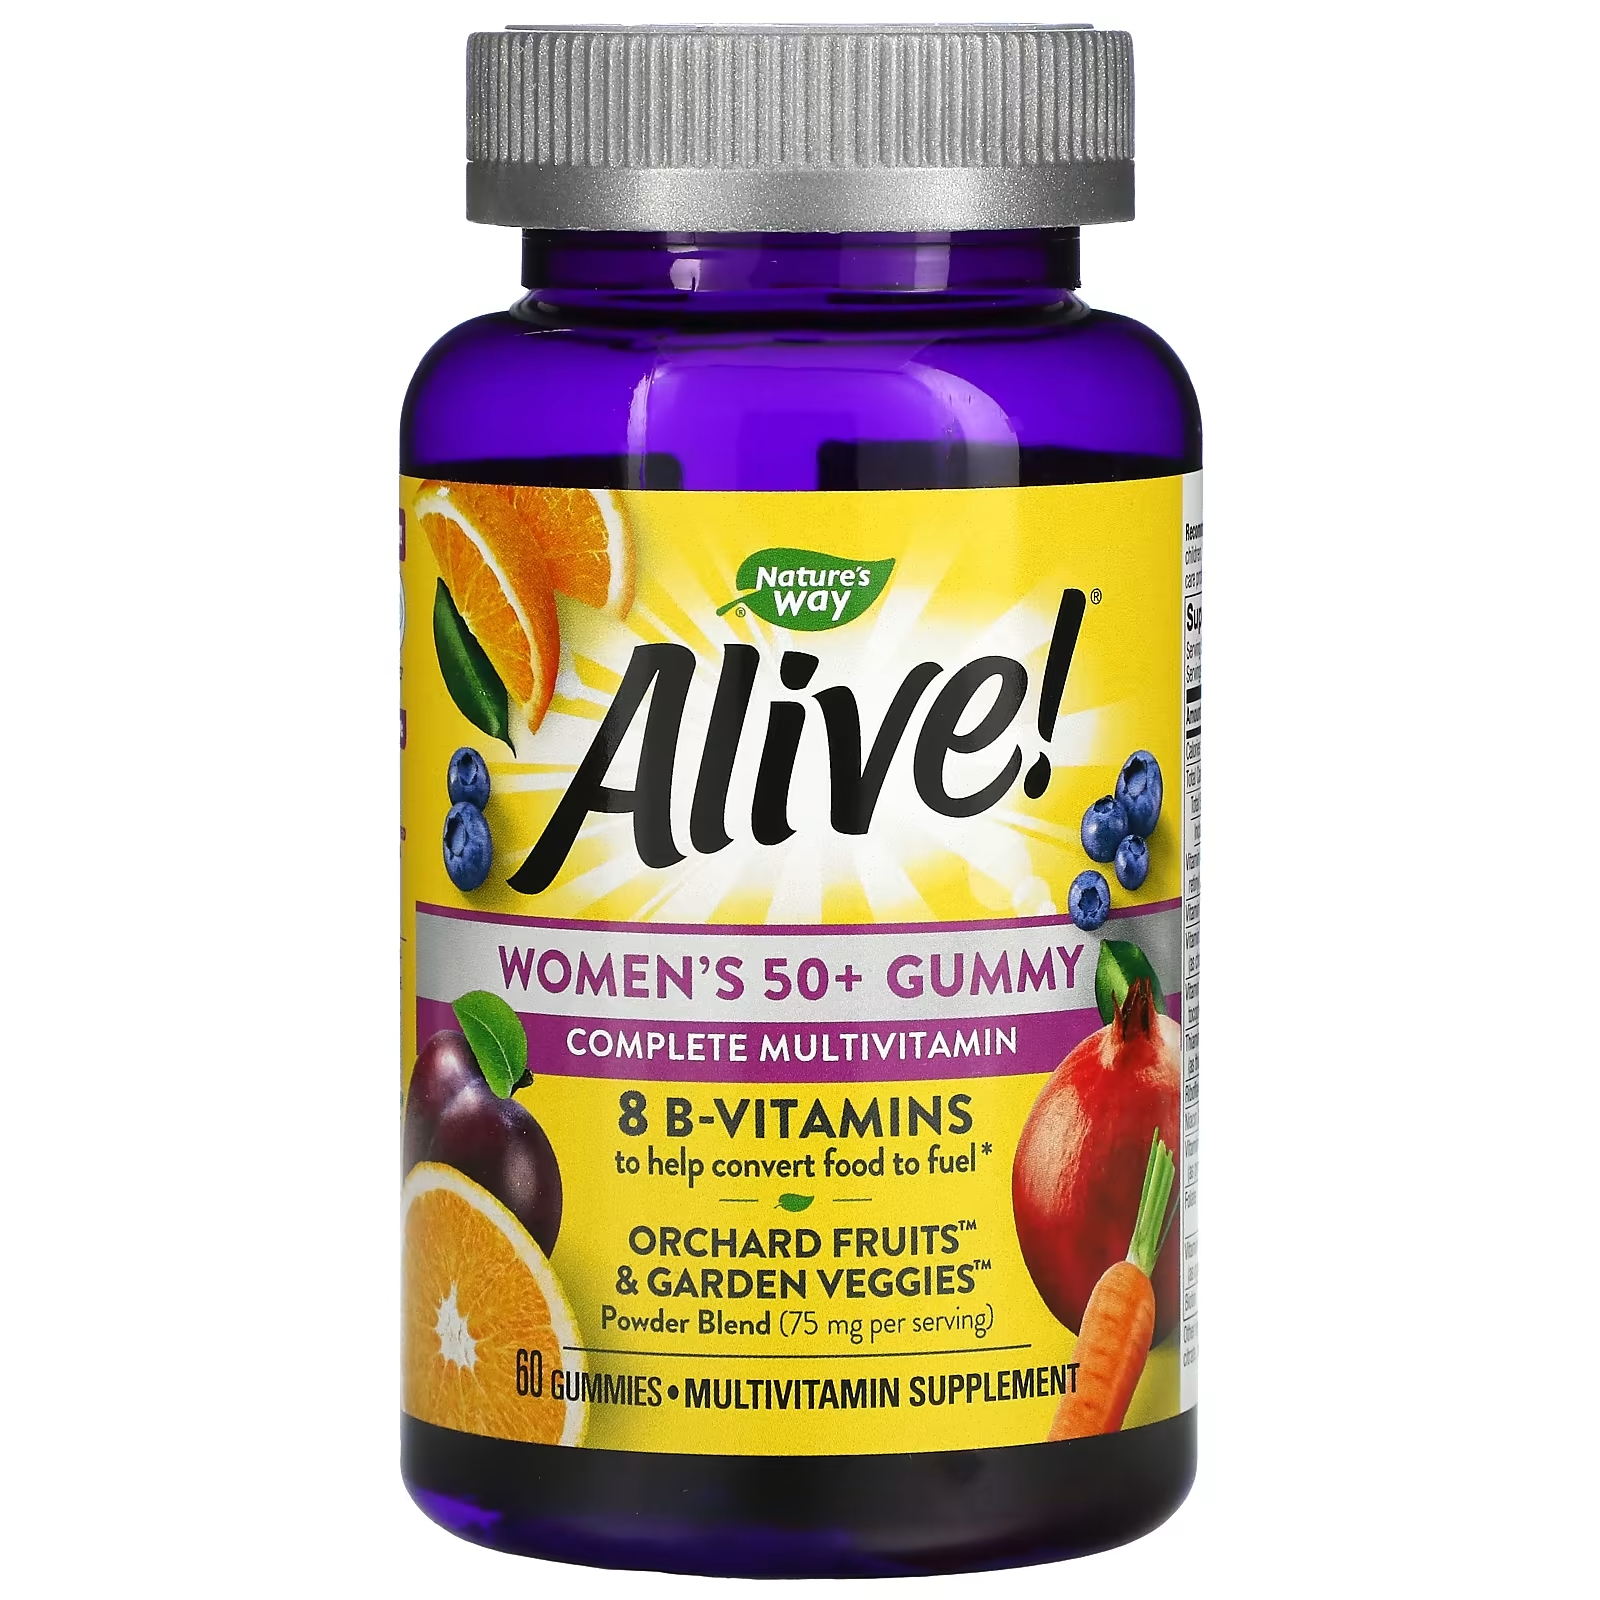 Жевательные Витамины для Женщин после 50 лет Nature's Way со вкусом фруктов, 60 таблеток nature s way витамины для женщин после 50 лет 75 жевательных таблеток